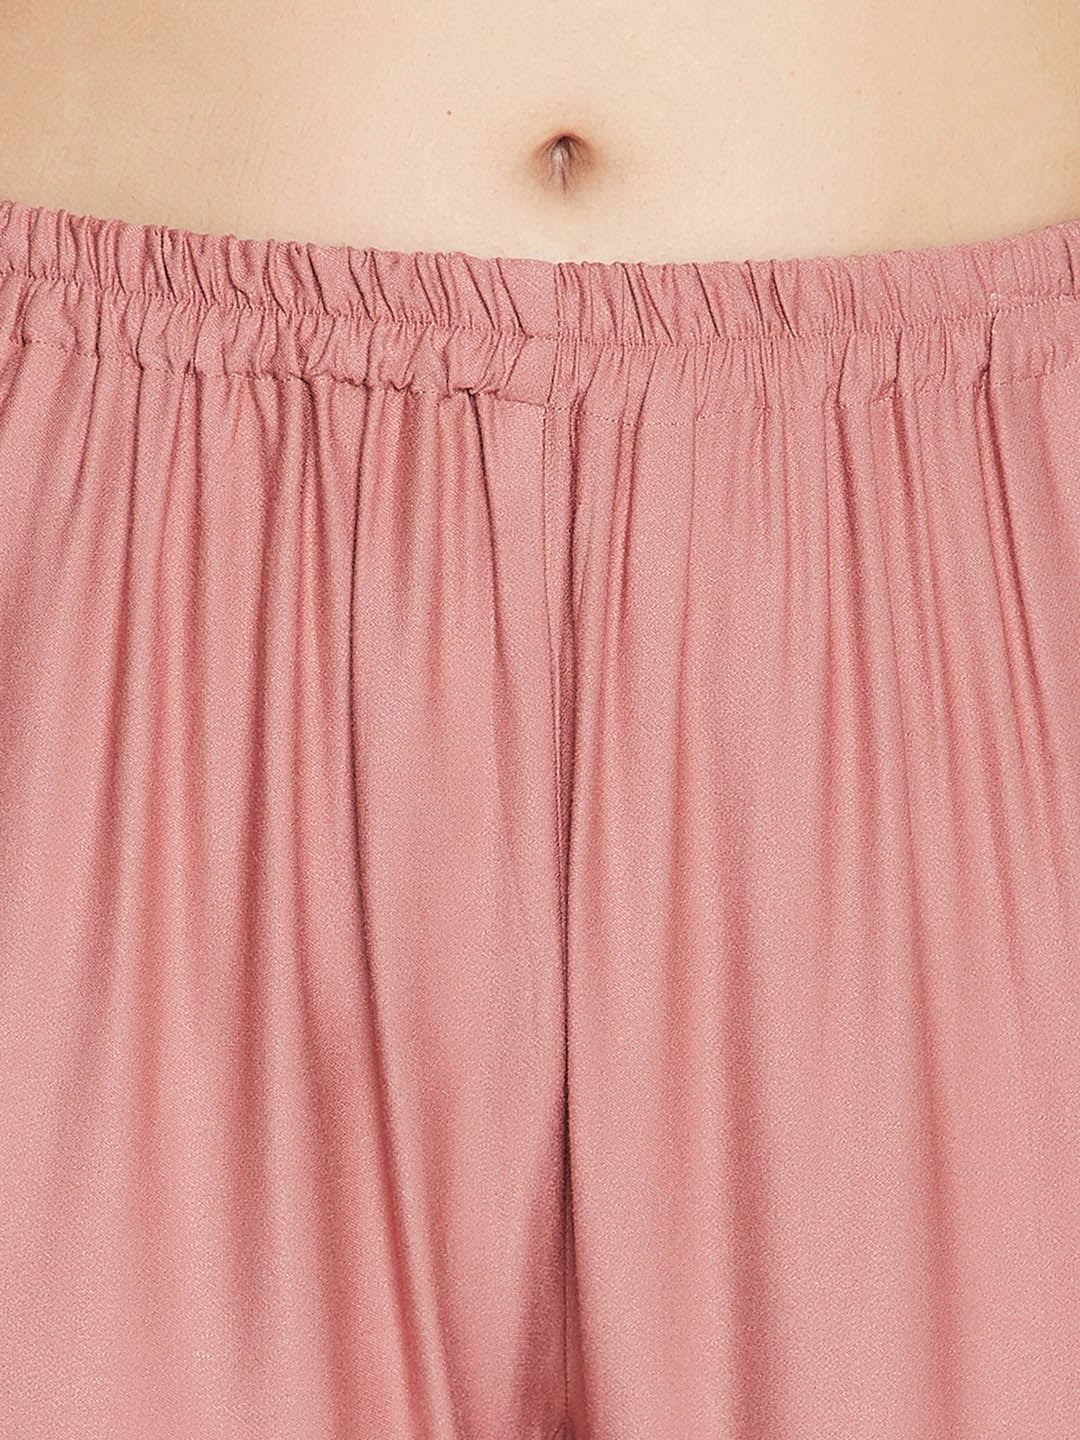 Chic Basic Shirt & Pyjama Set In Dusky Pink